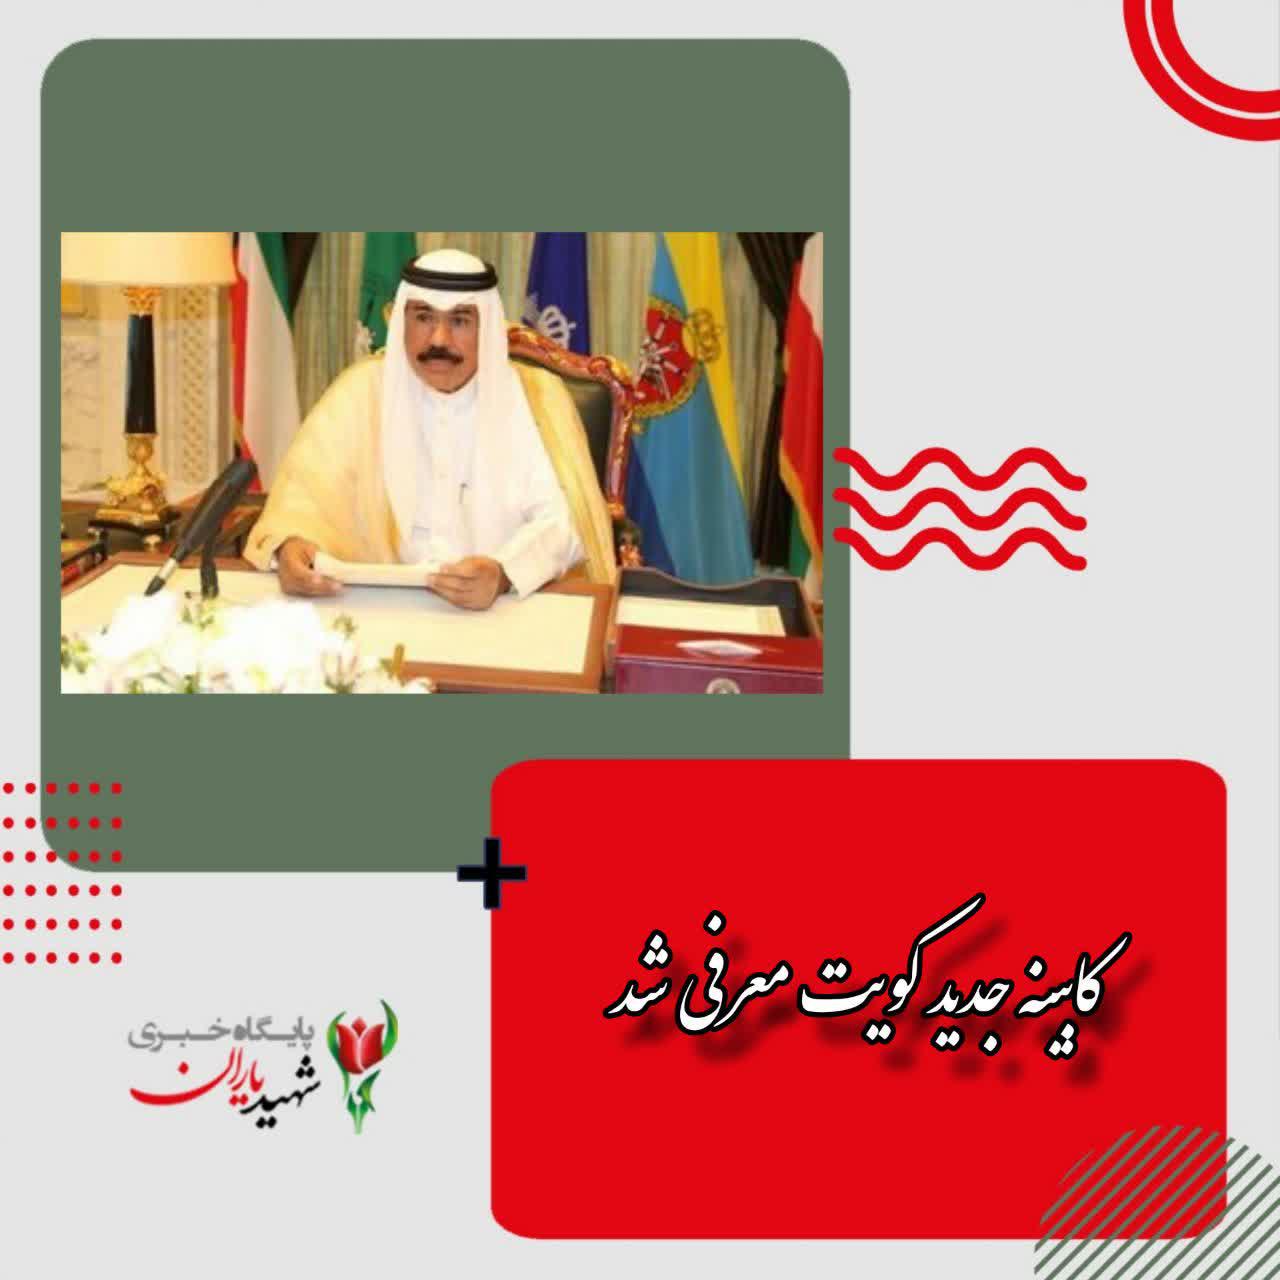 کابینه جدید کویت معرفی شد